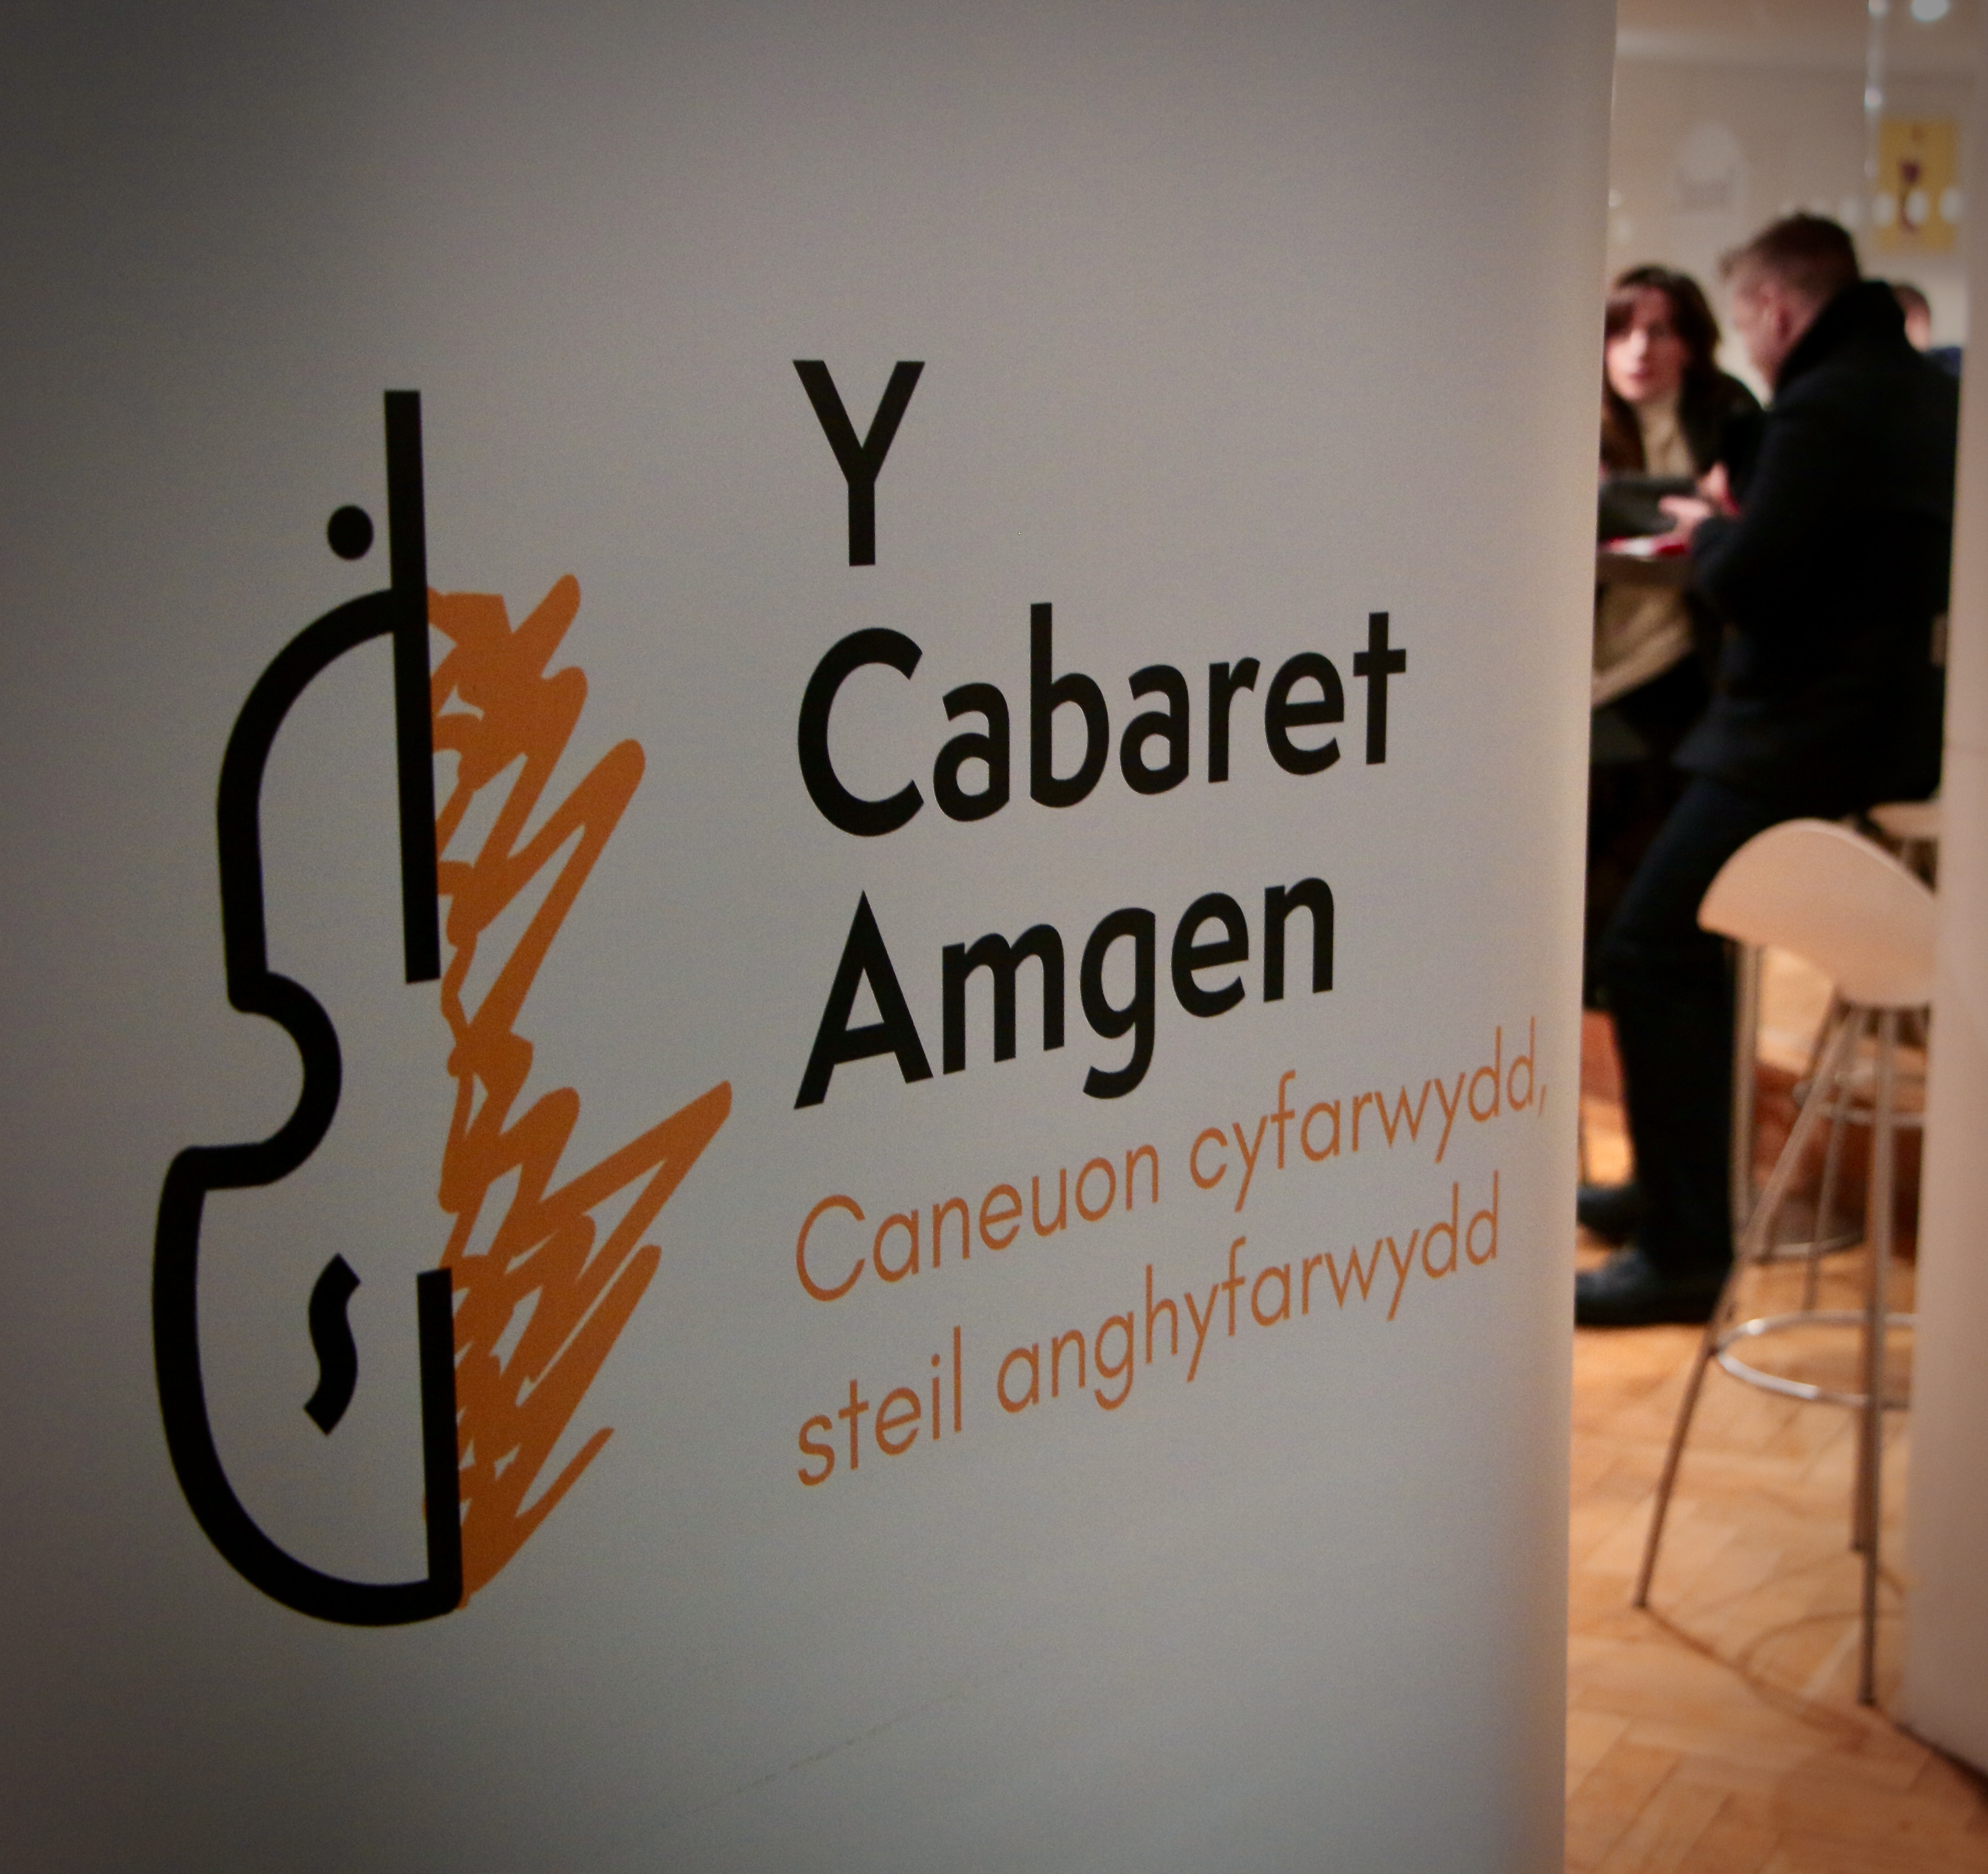 Y CAbaret Amgen - The Alternative Cabaret Banner